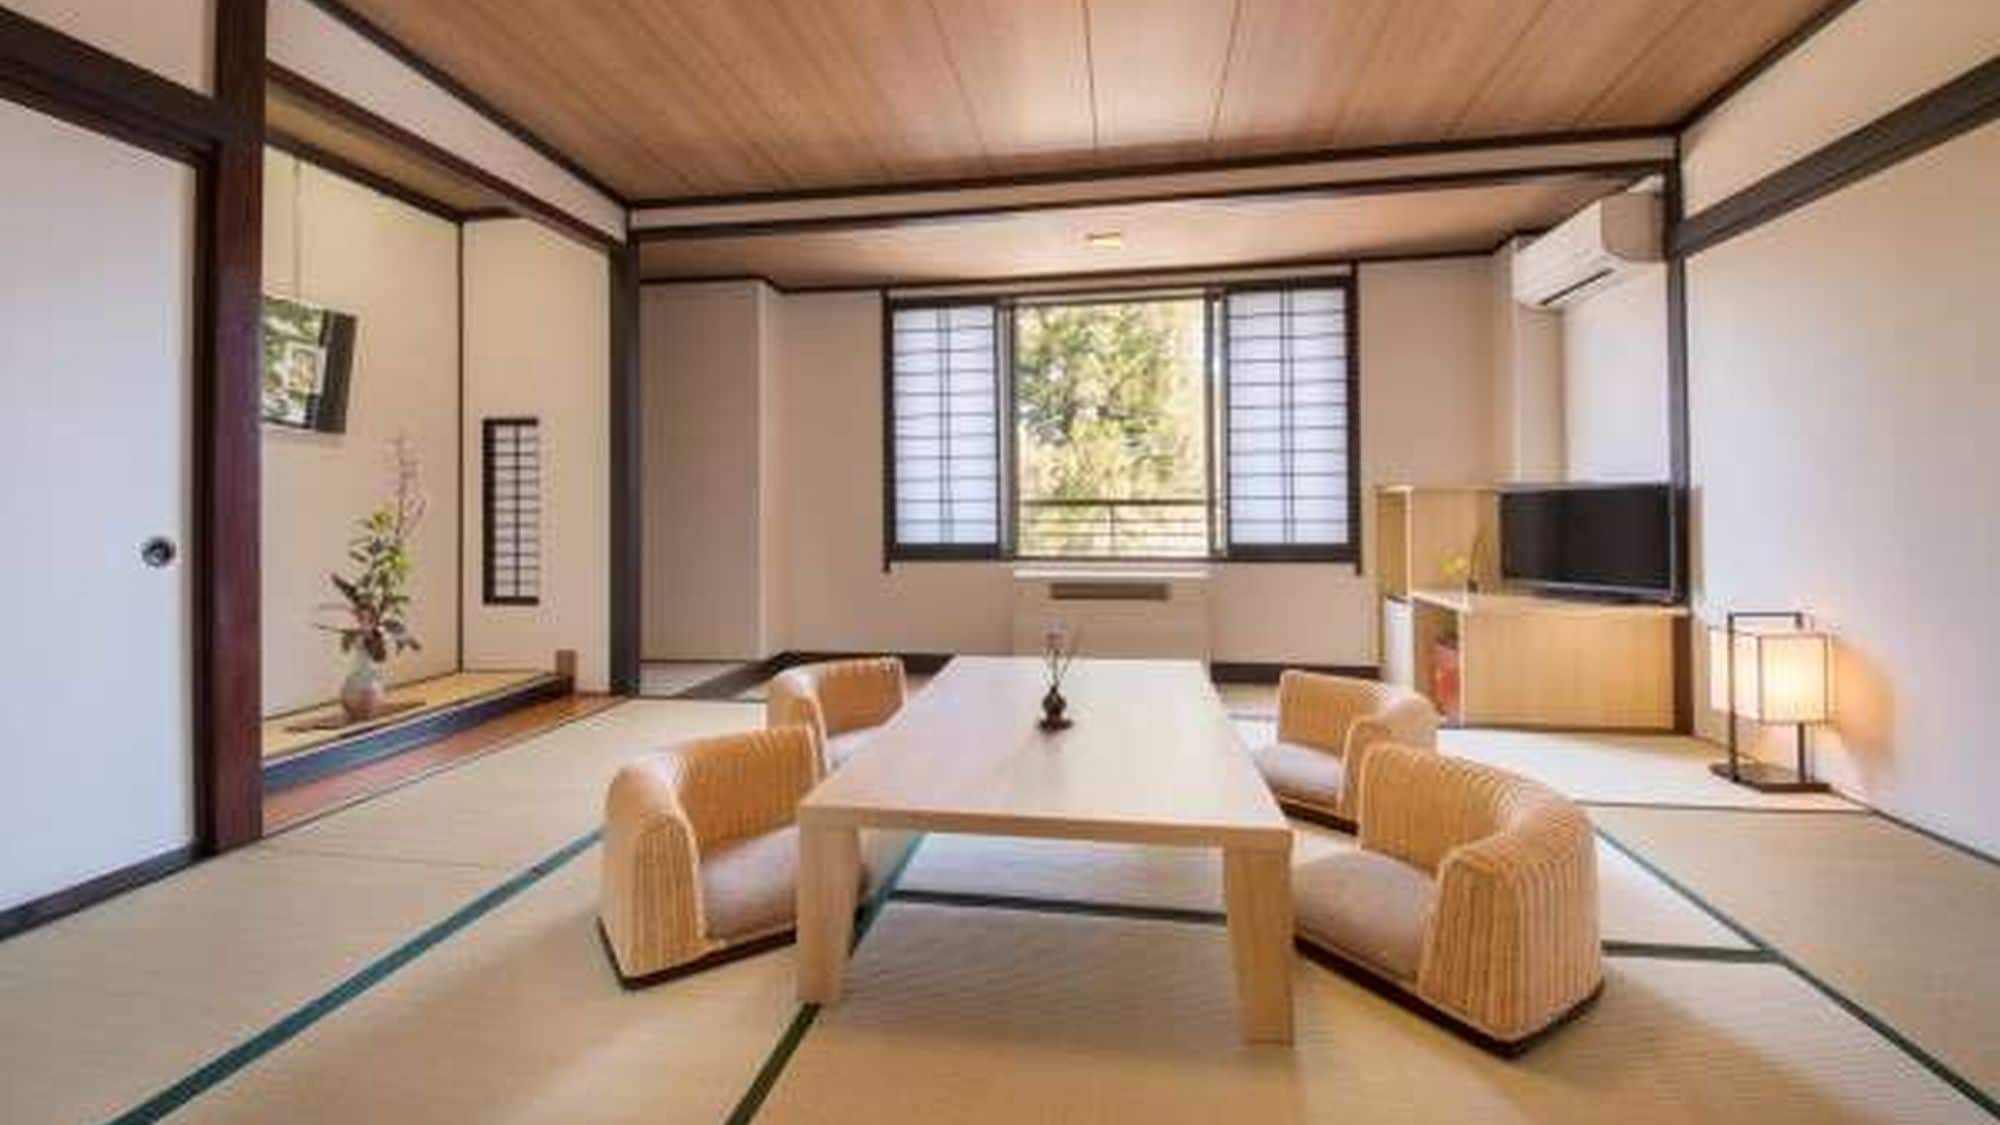 Renewal in 2015 ★ Japanese modern 10 tatami + 6 tatami twin room (10 tatami room) ★